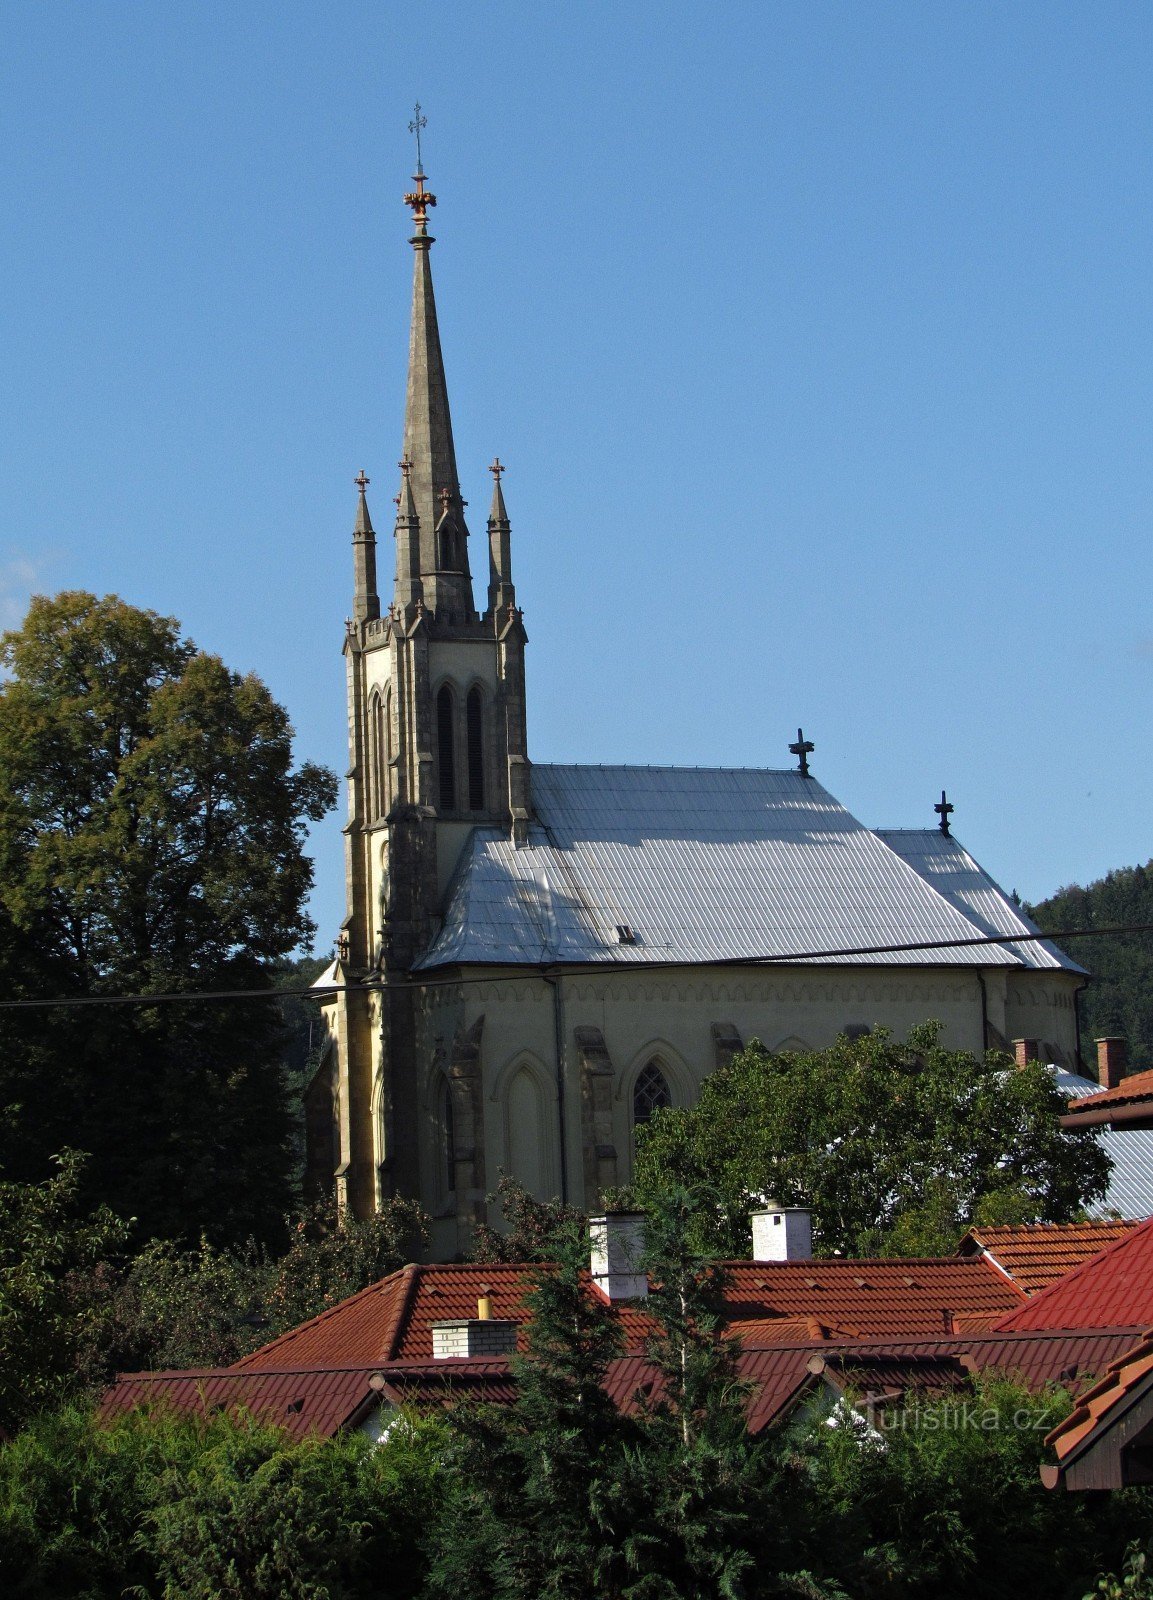 Bratřejov - nhà thờ Thánh Cyril và Methodius